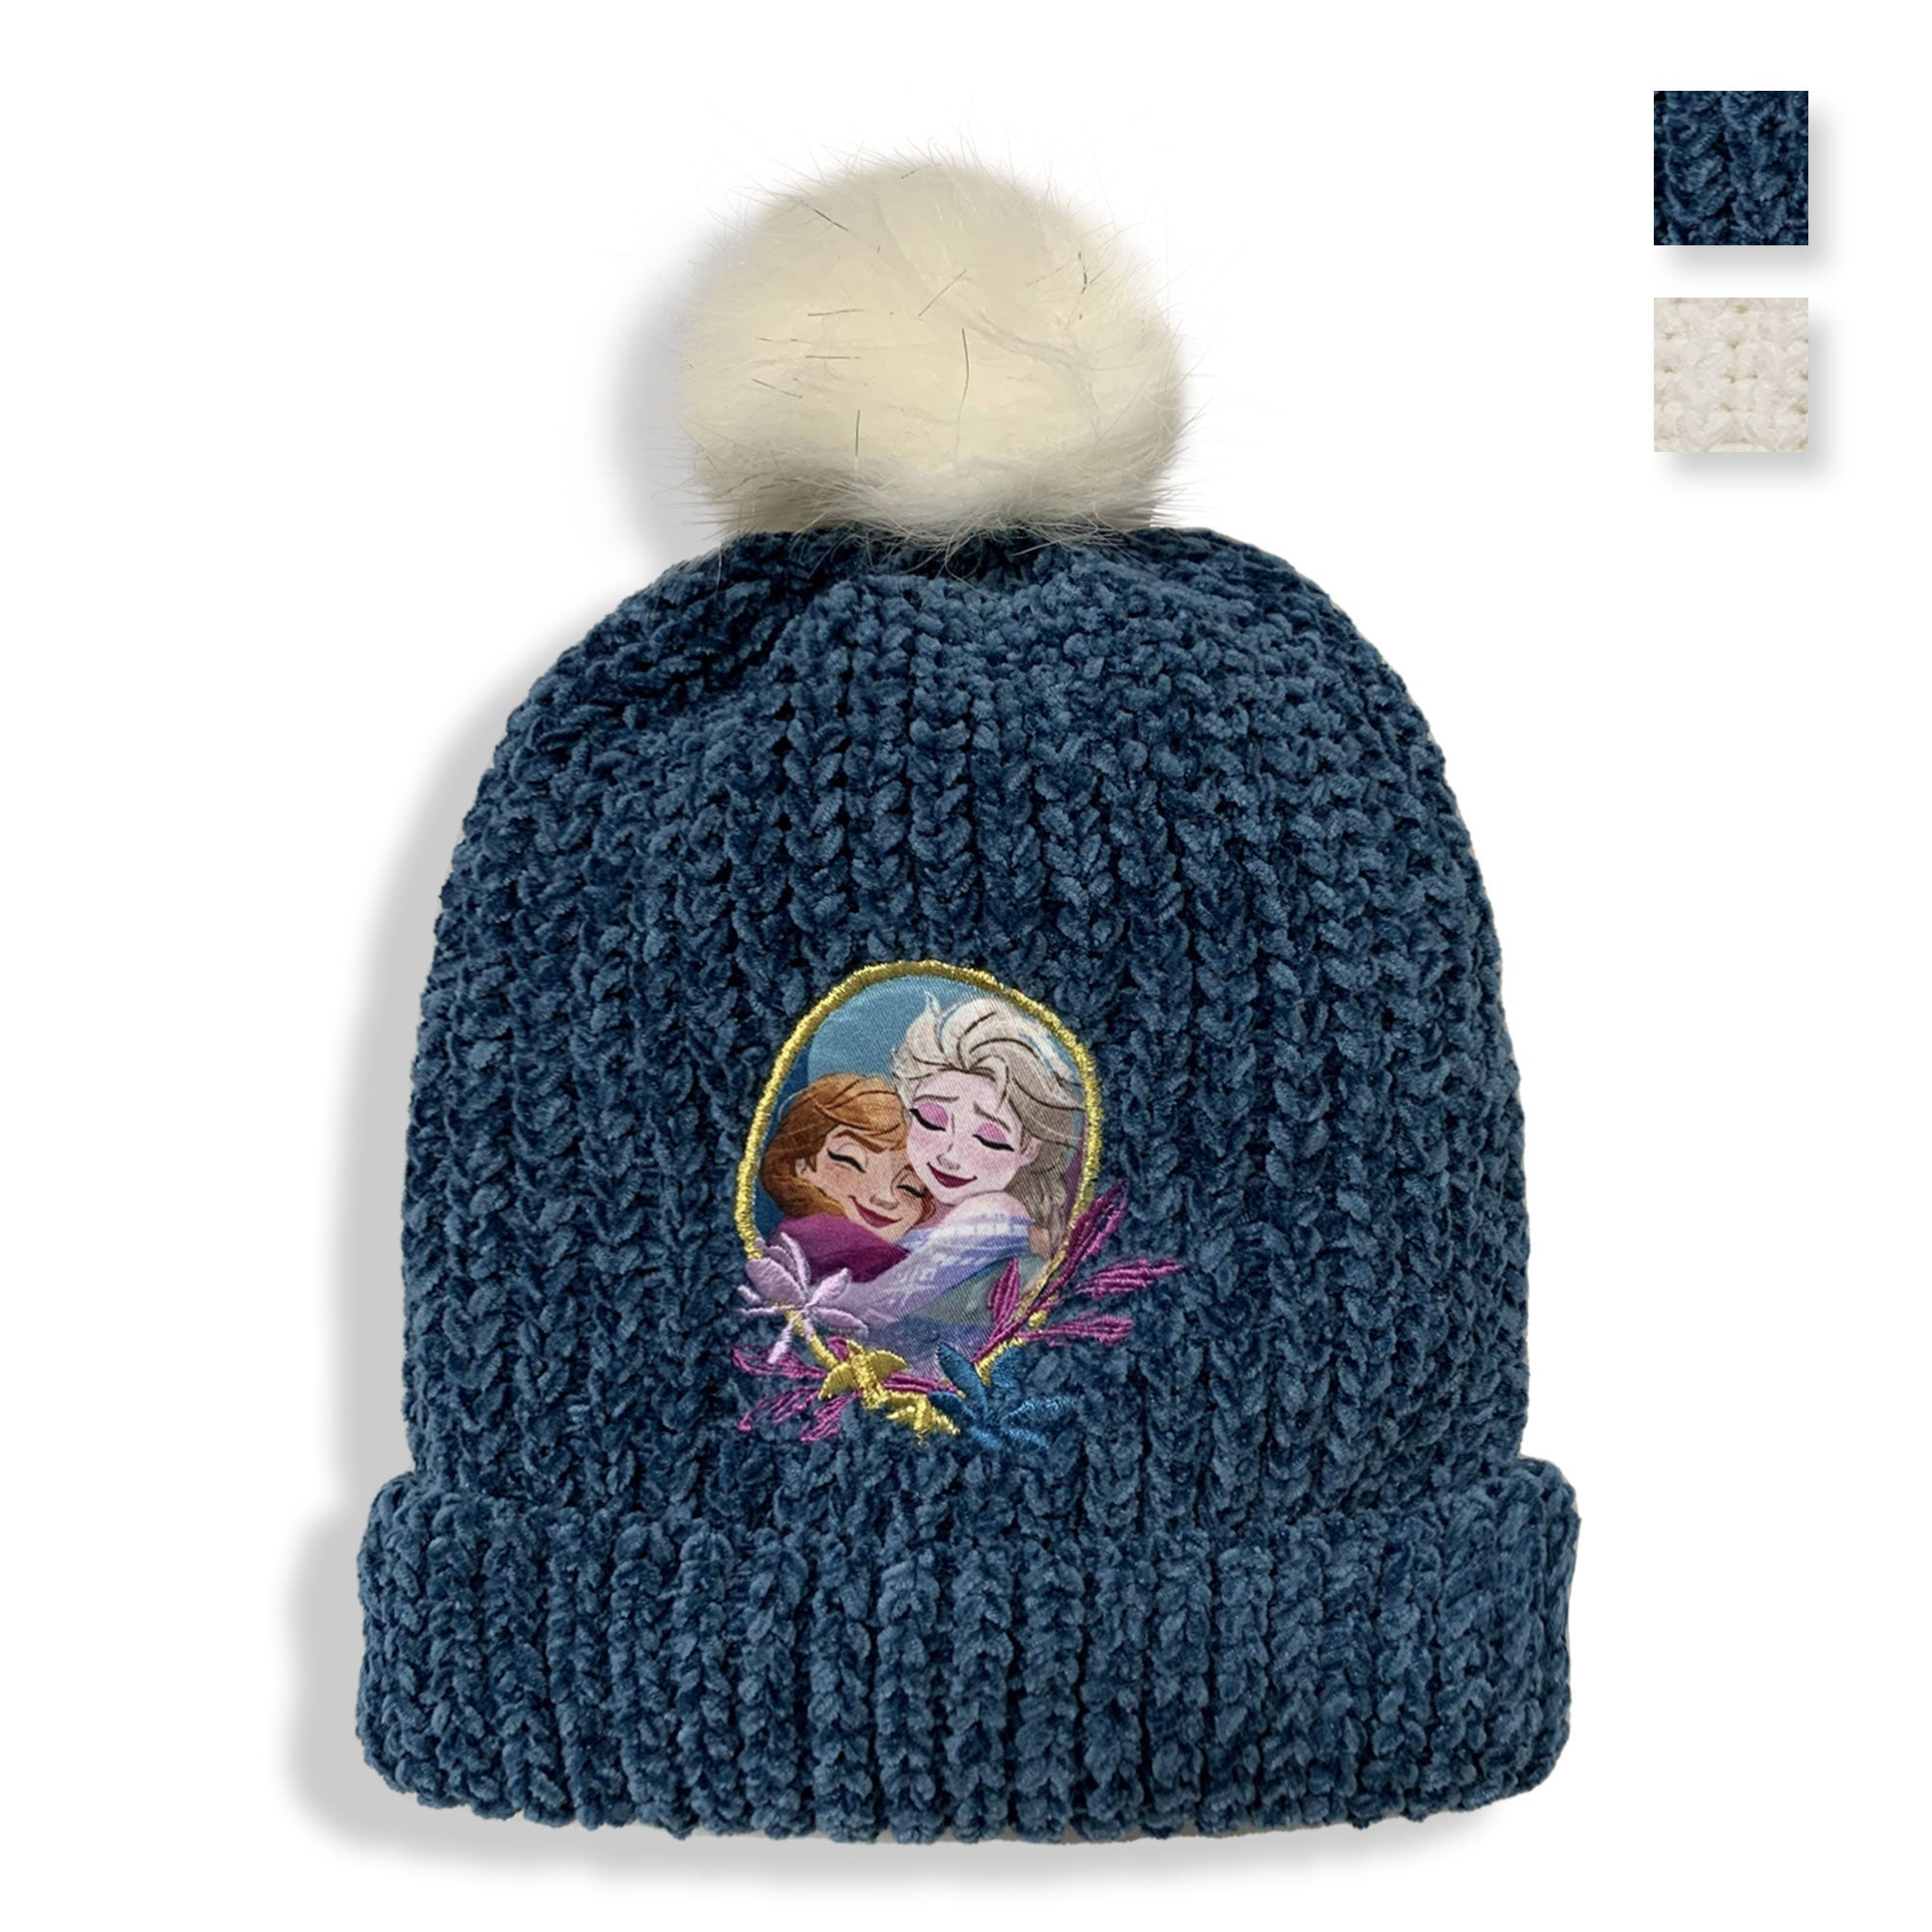 Cappello Disney Frozen Elsa e Anna invernale bambina con pon pon bimba 5896